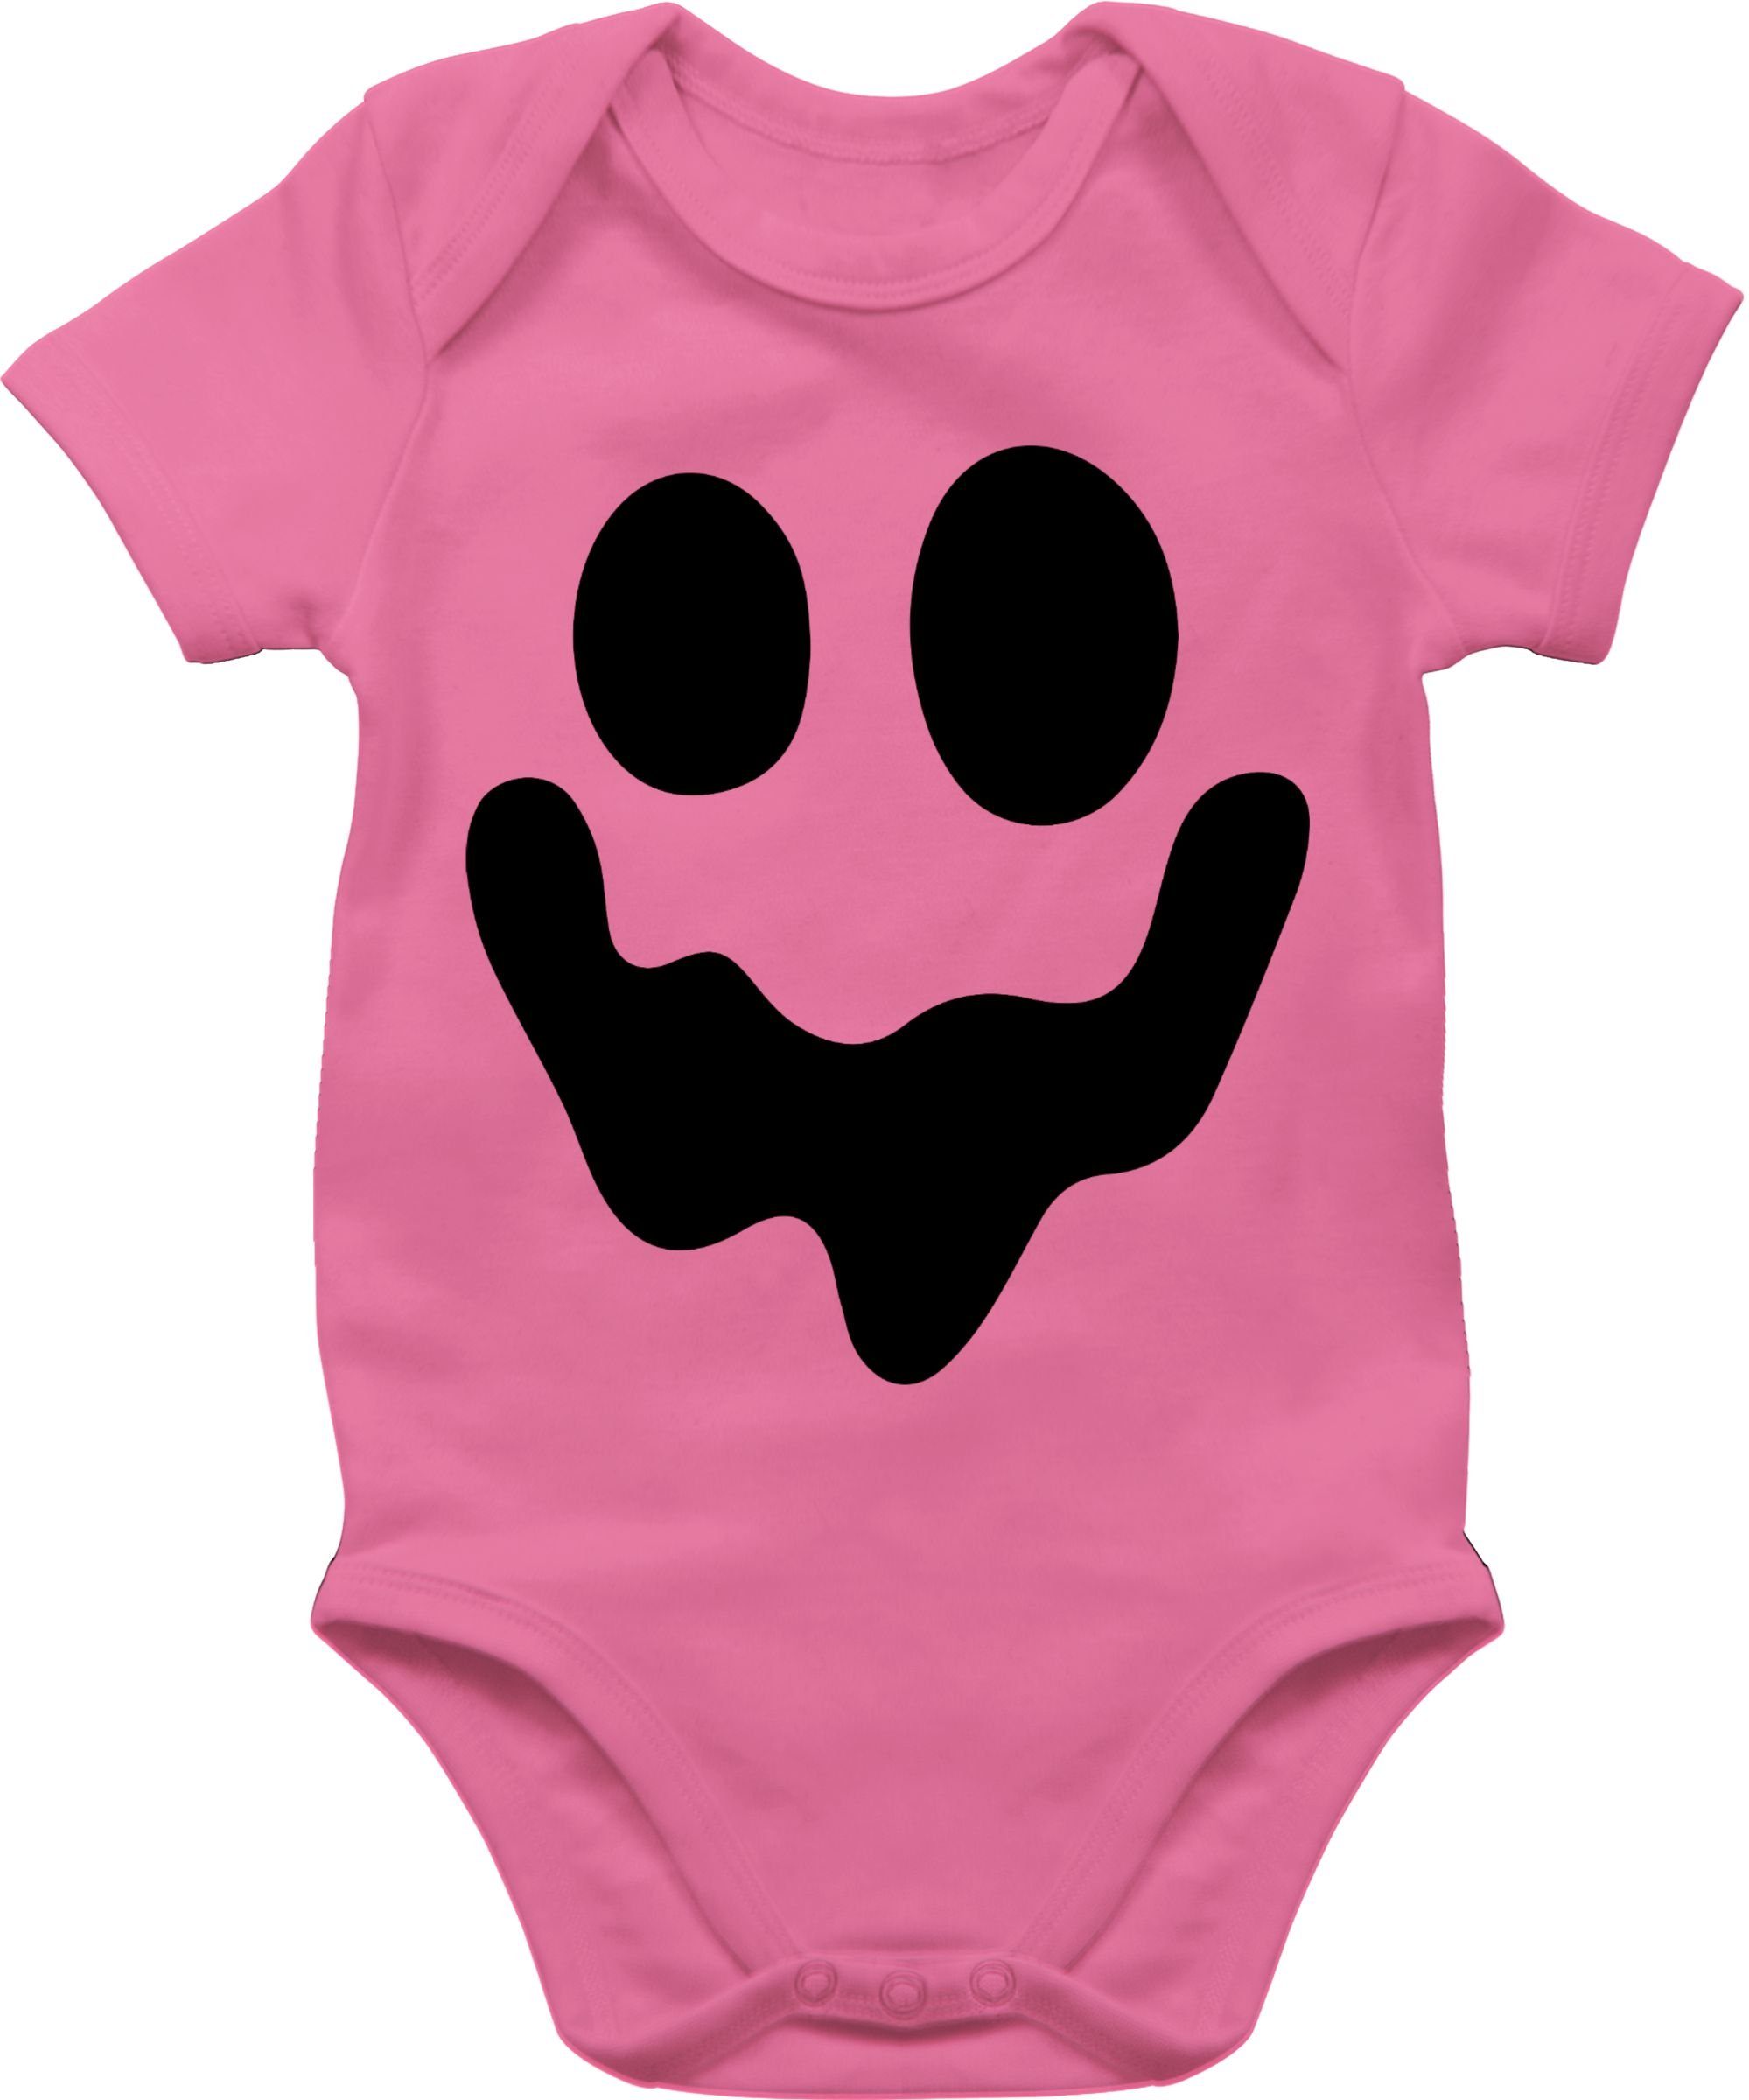 Shirtracer Shirtbody Geist Gespenst Spuk Einfach Gruselig Halloween Kostüme für Baby 2 Pink